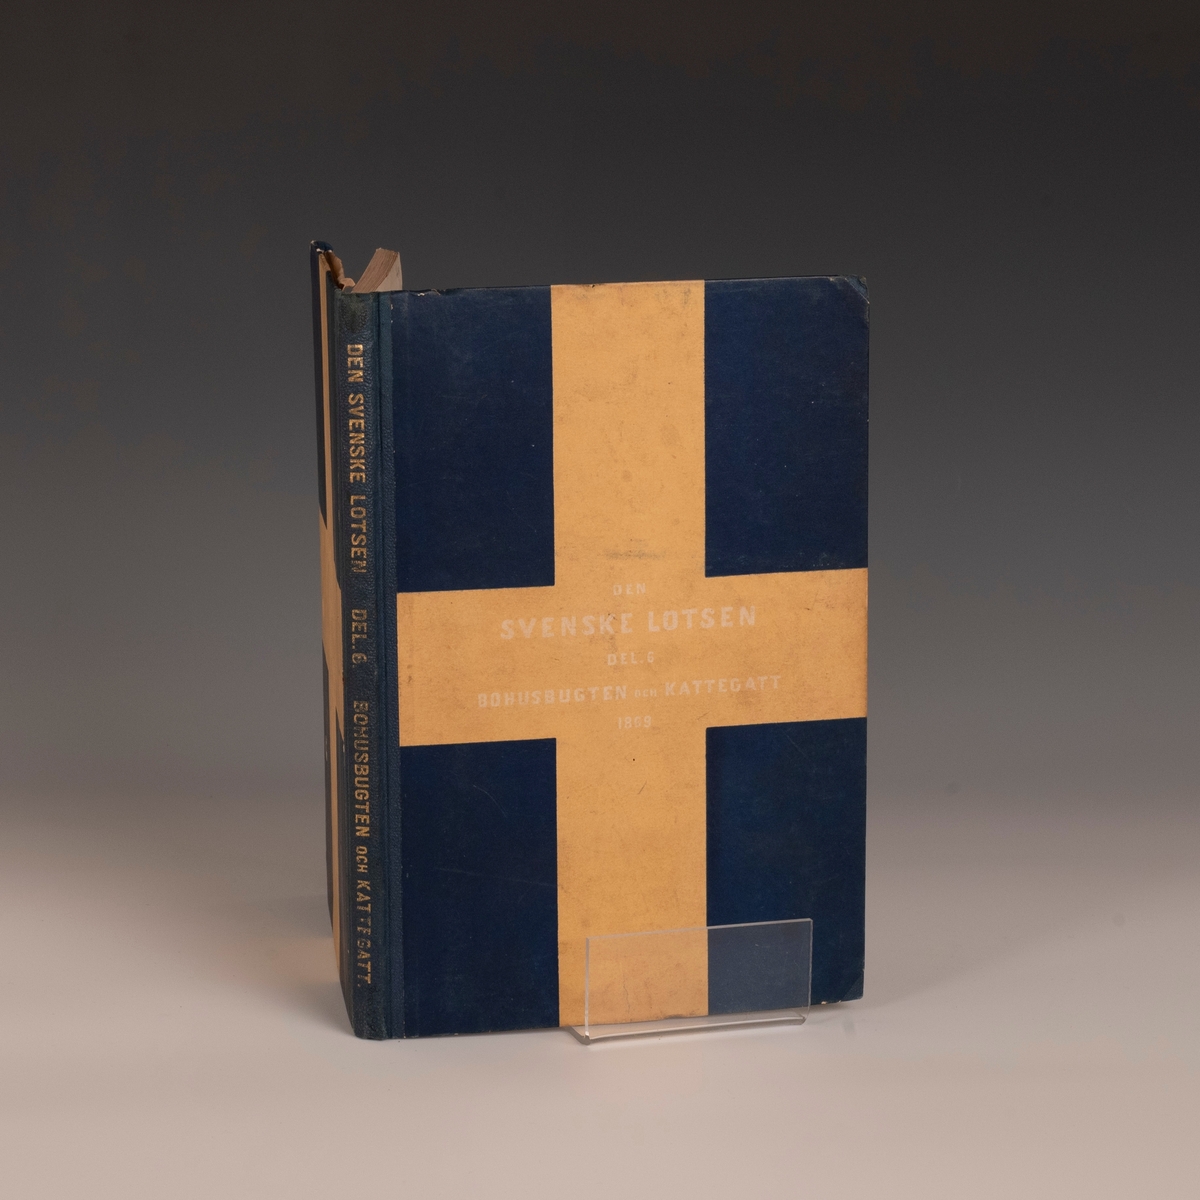 svensk flagg, innbundet, kortet satt inn på forsiden, årstall 1869